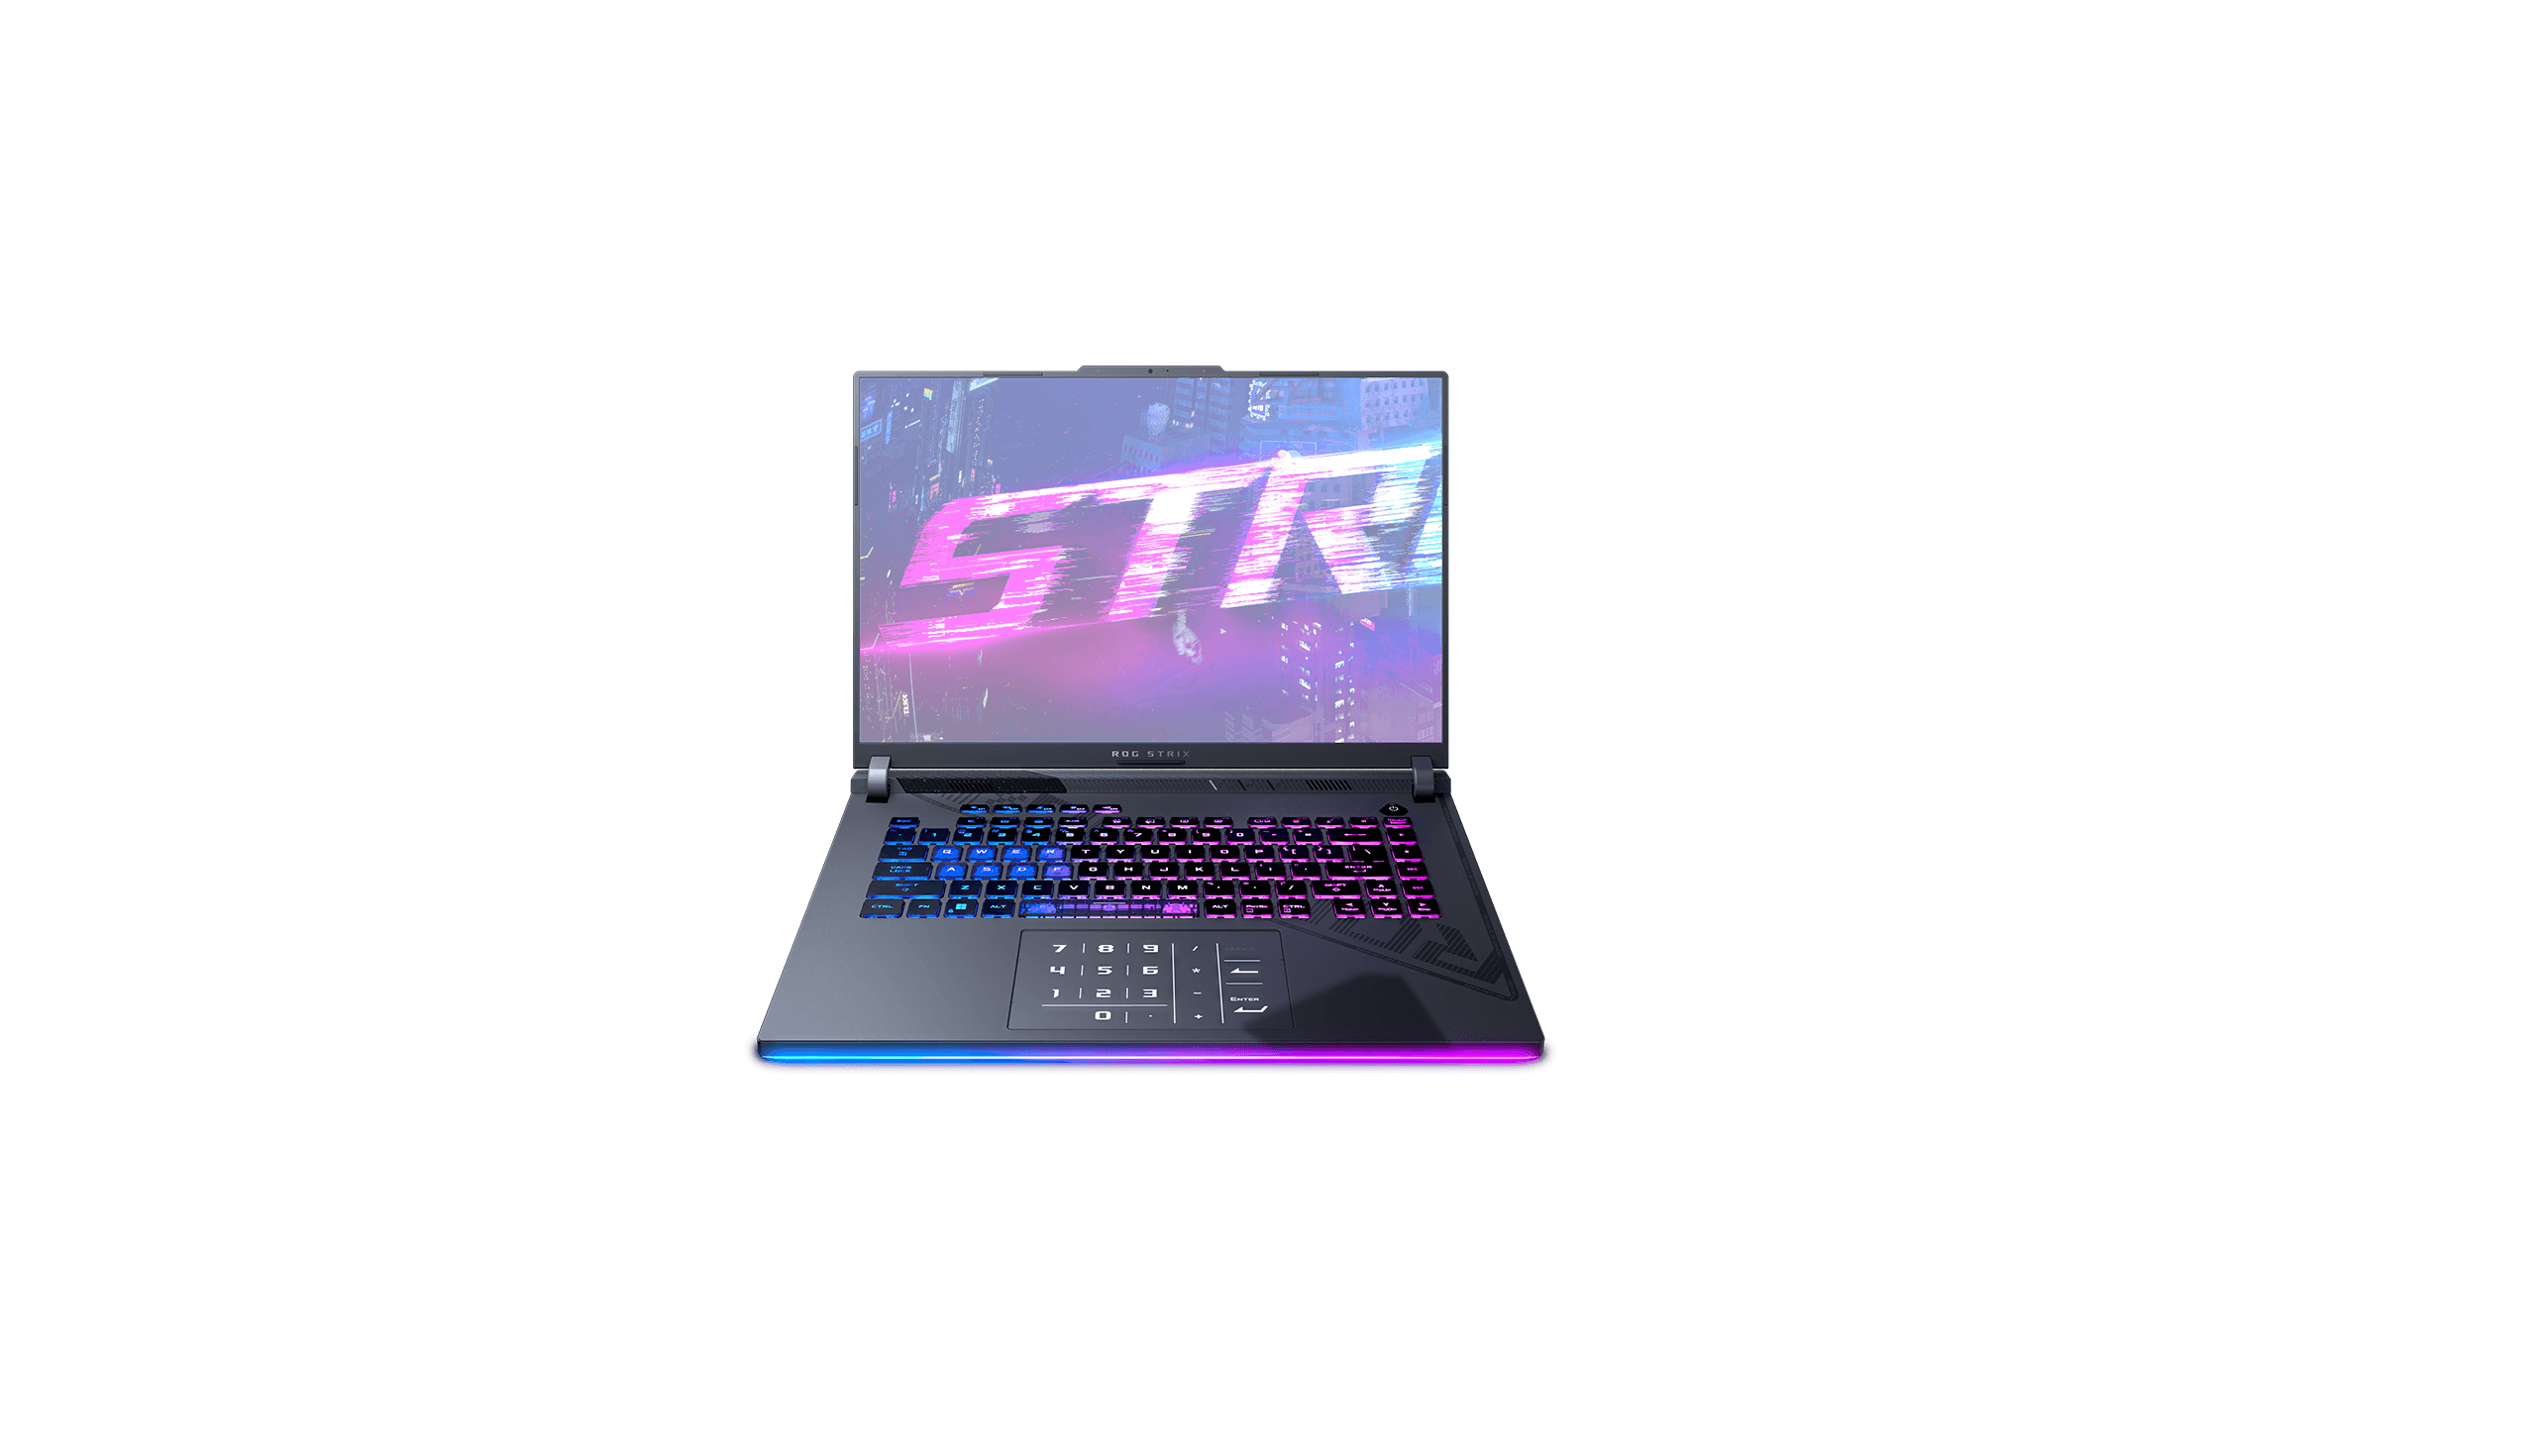 ROG Strix G16 Gaming Laptop (2023)